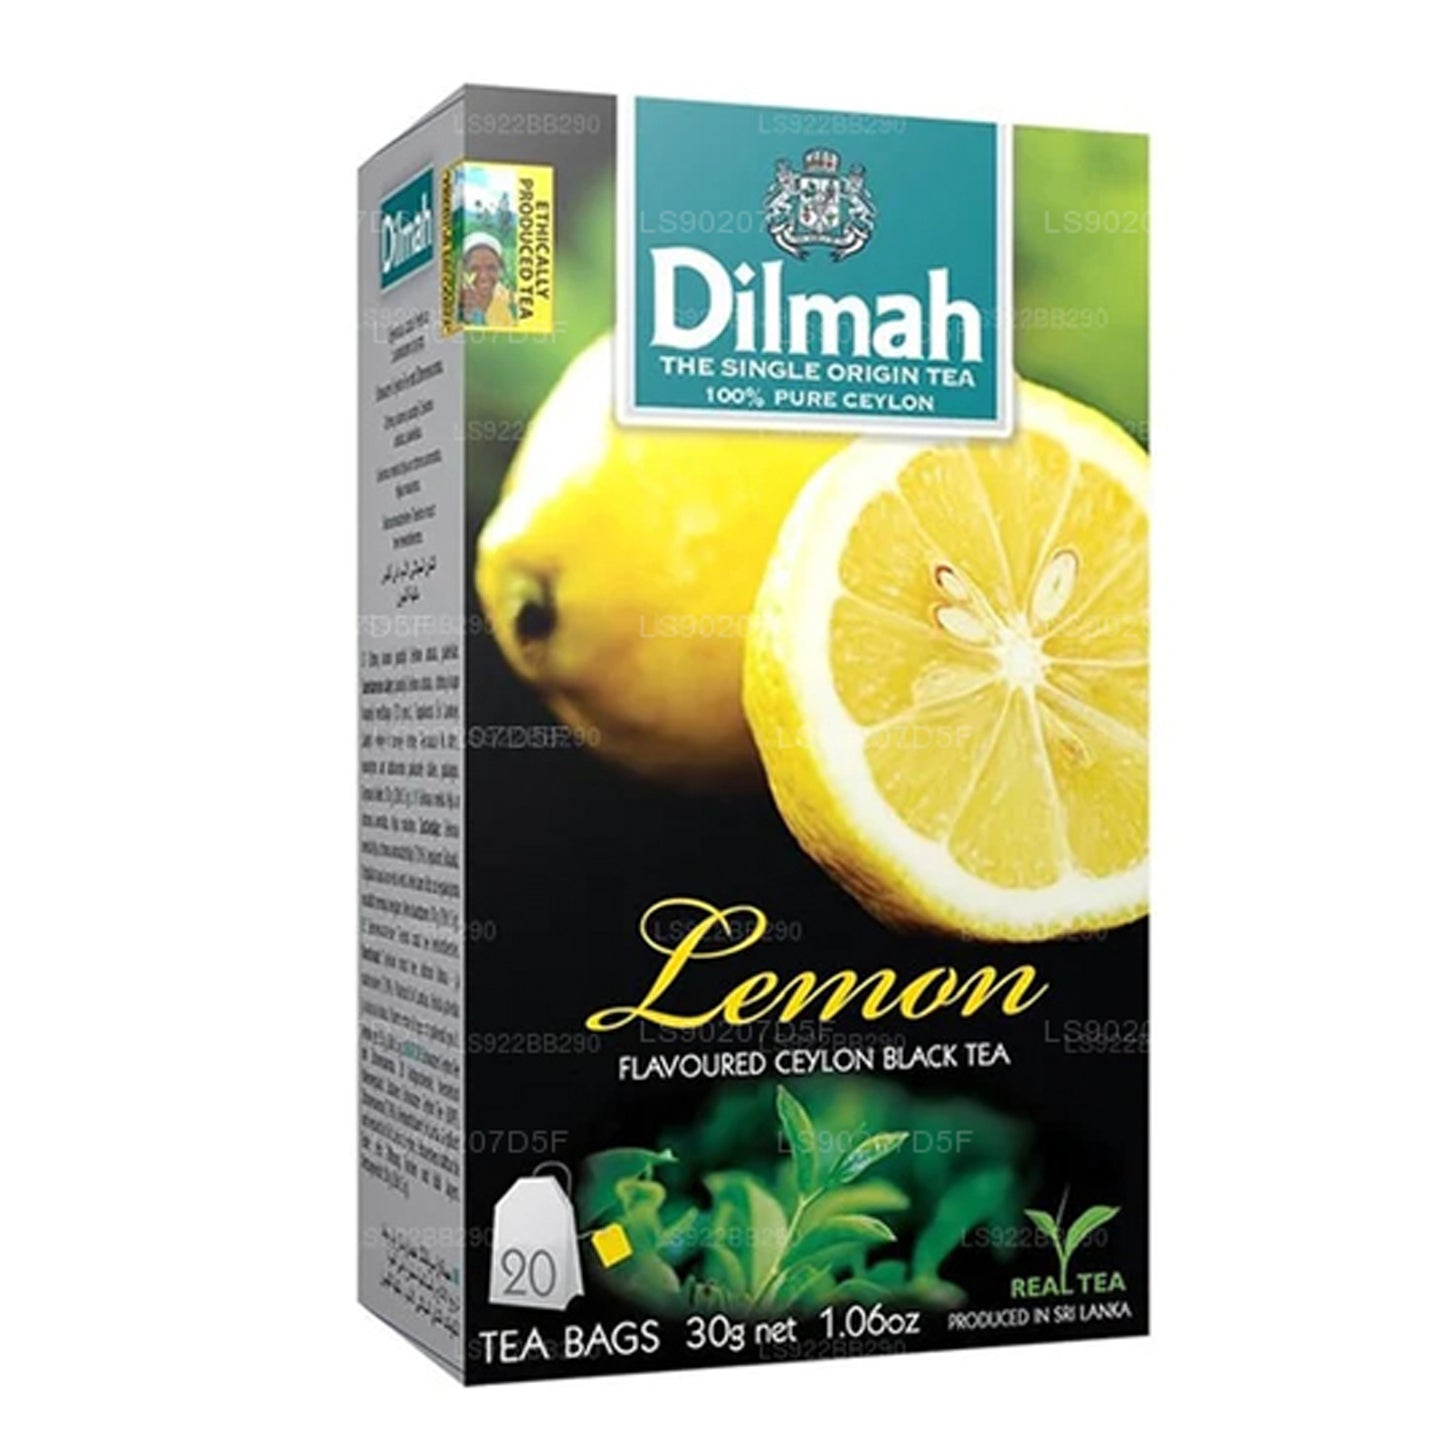 Dilmah 柠檬味茶 (30g) 20 茶包